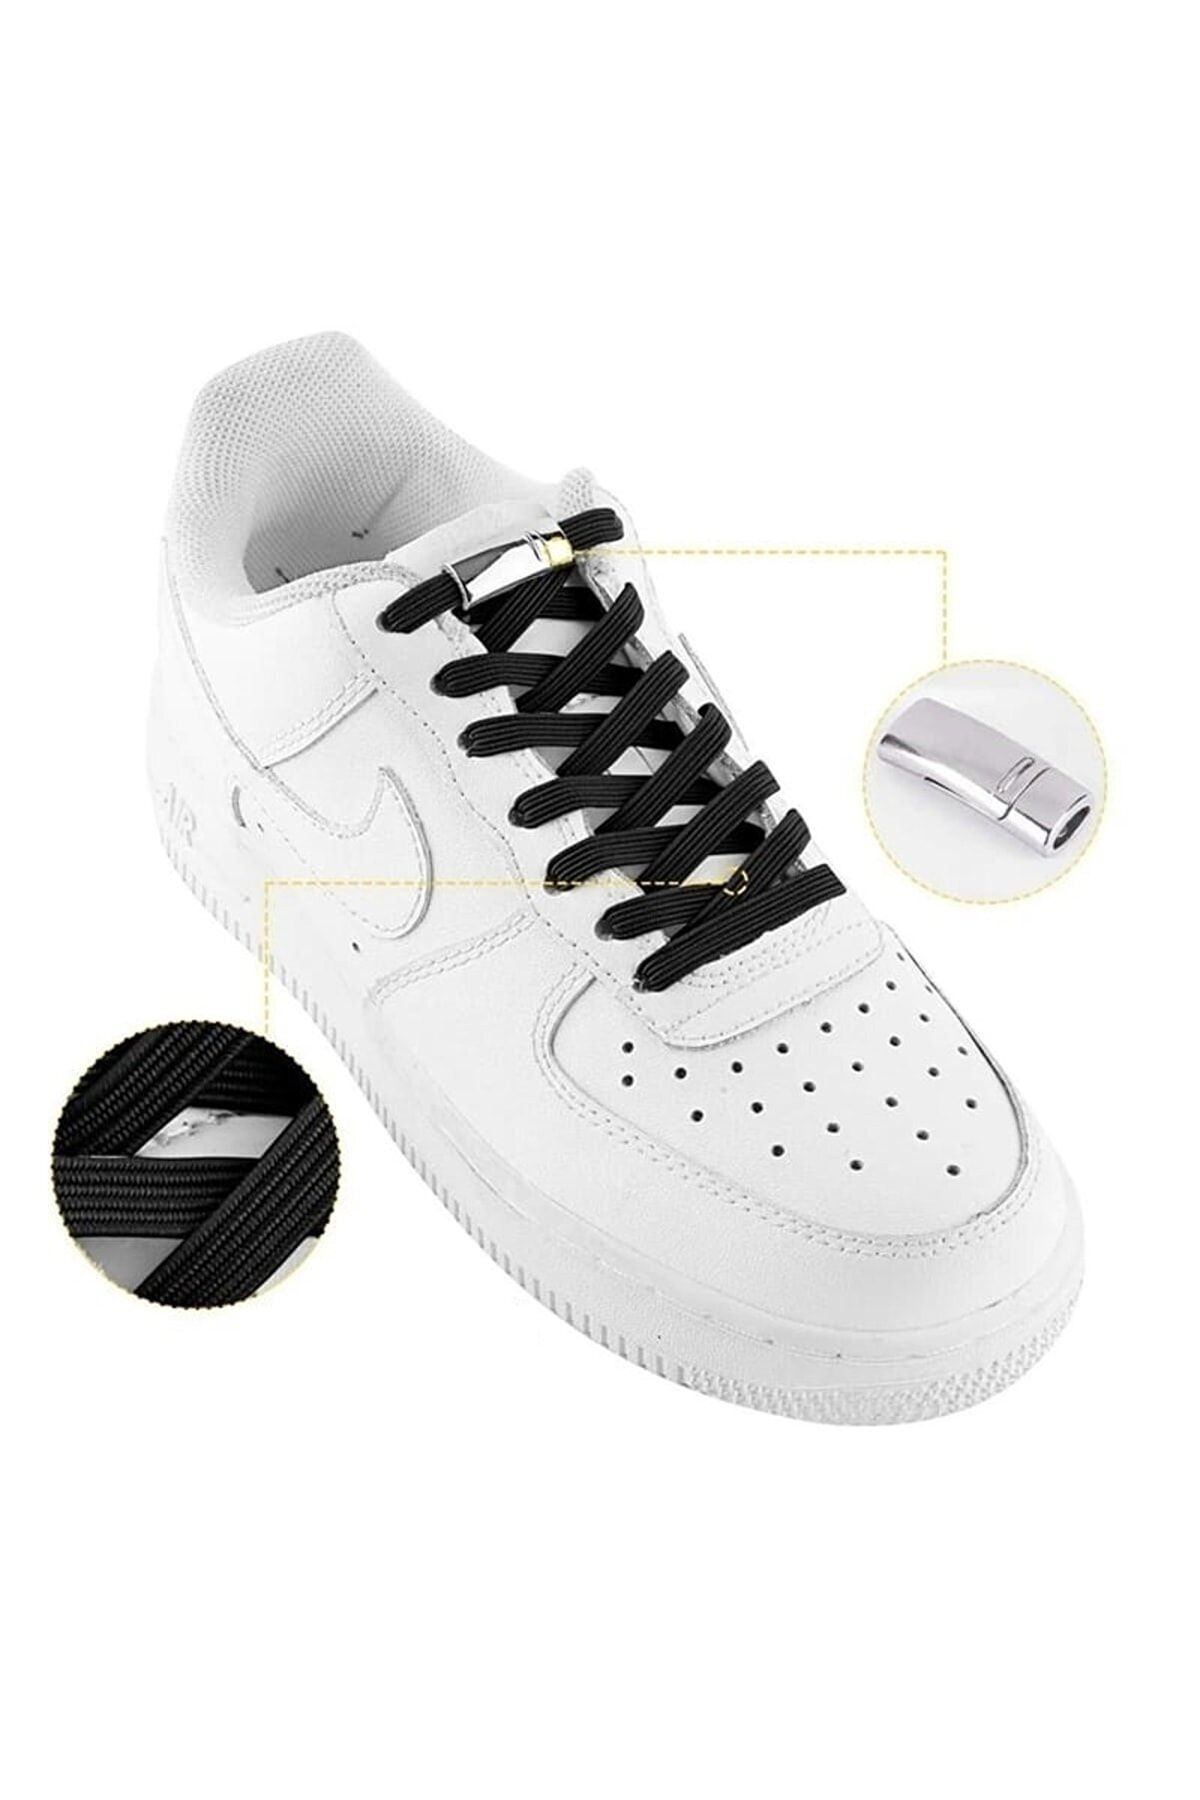 Dream Plus Ayakkabı Bağcığı Bağcık Bağı Mıknatıslı Manyetik Lastikli Siyah